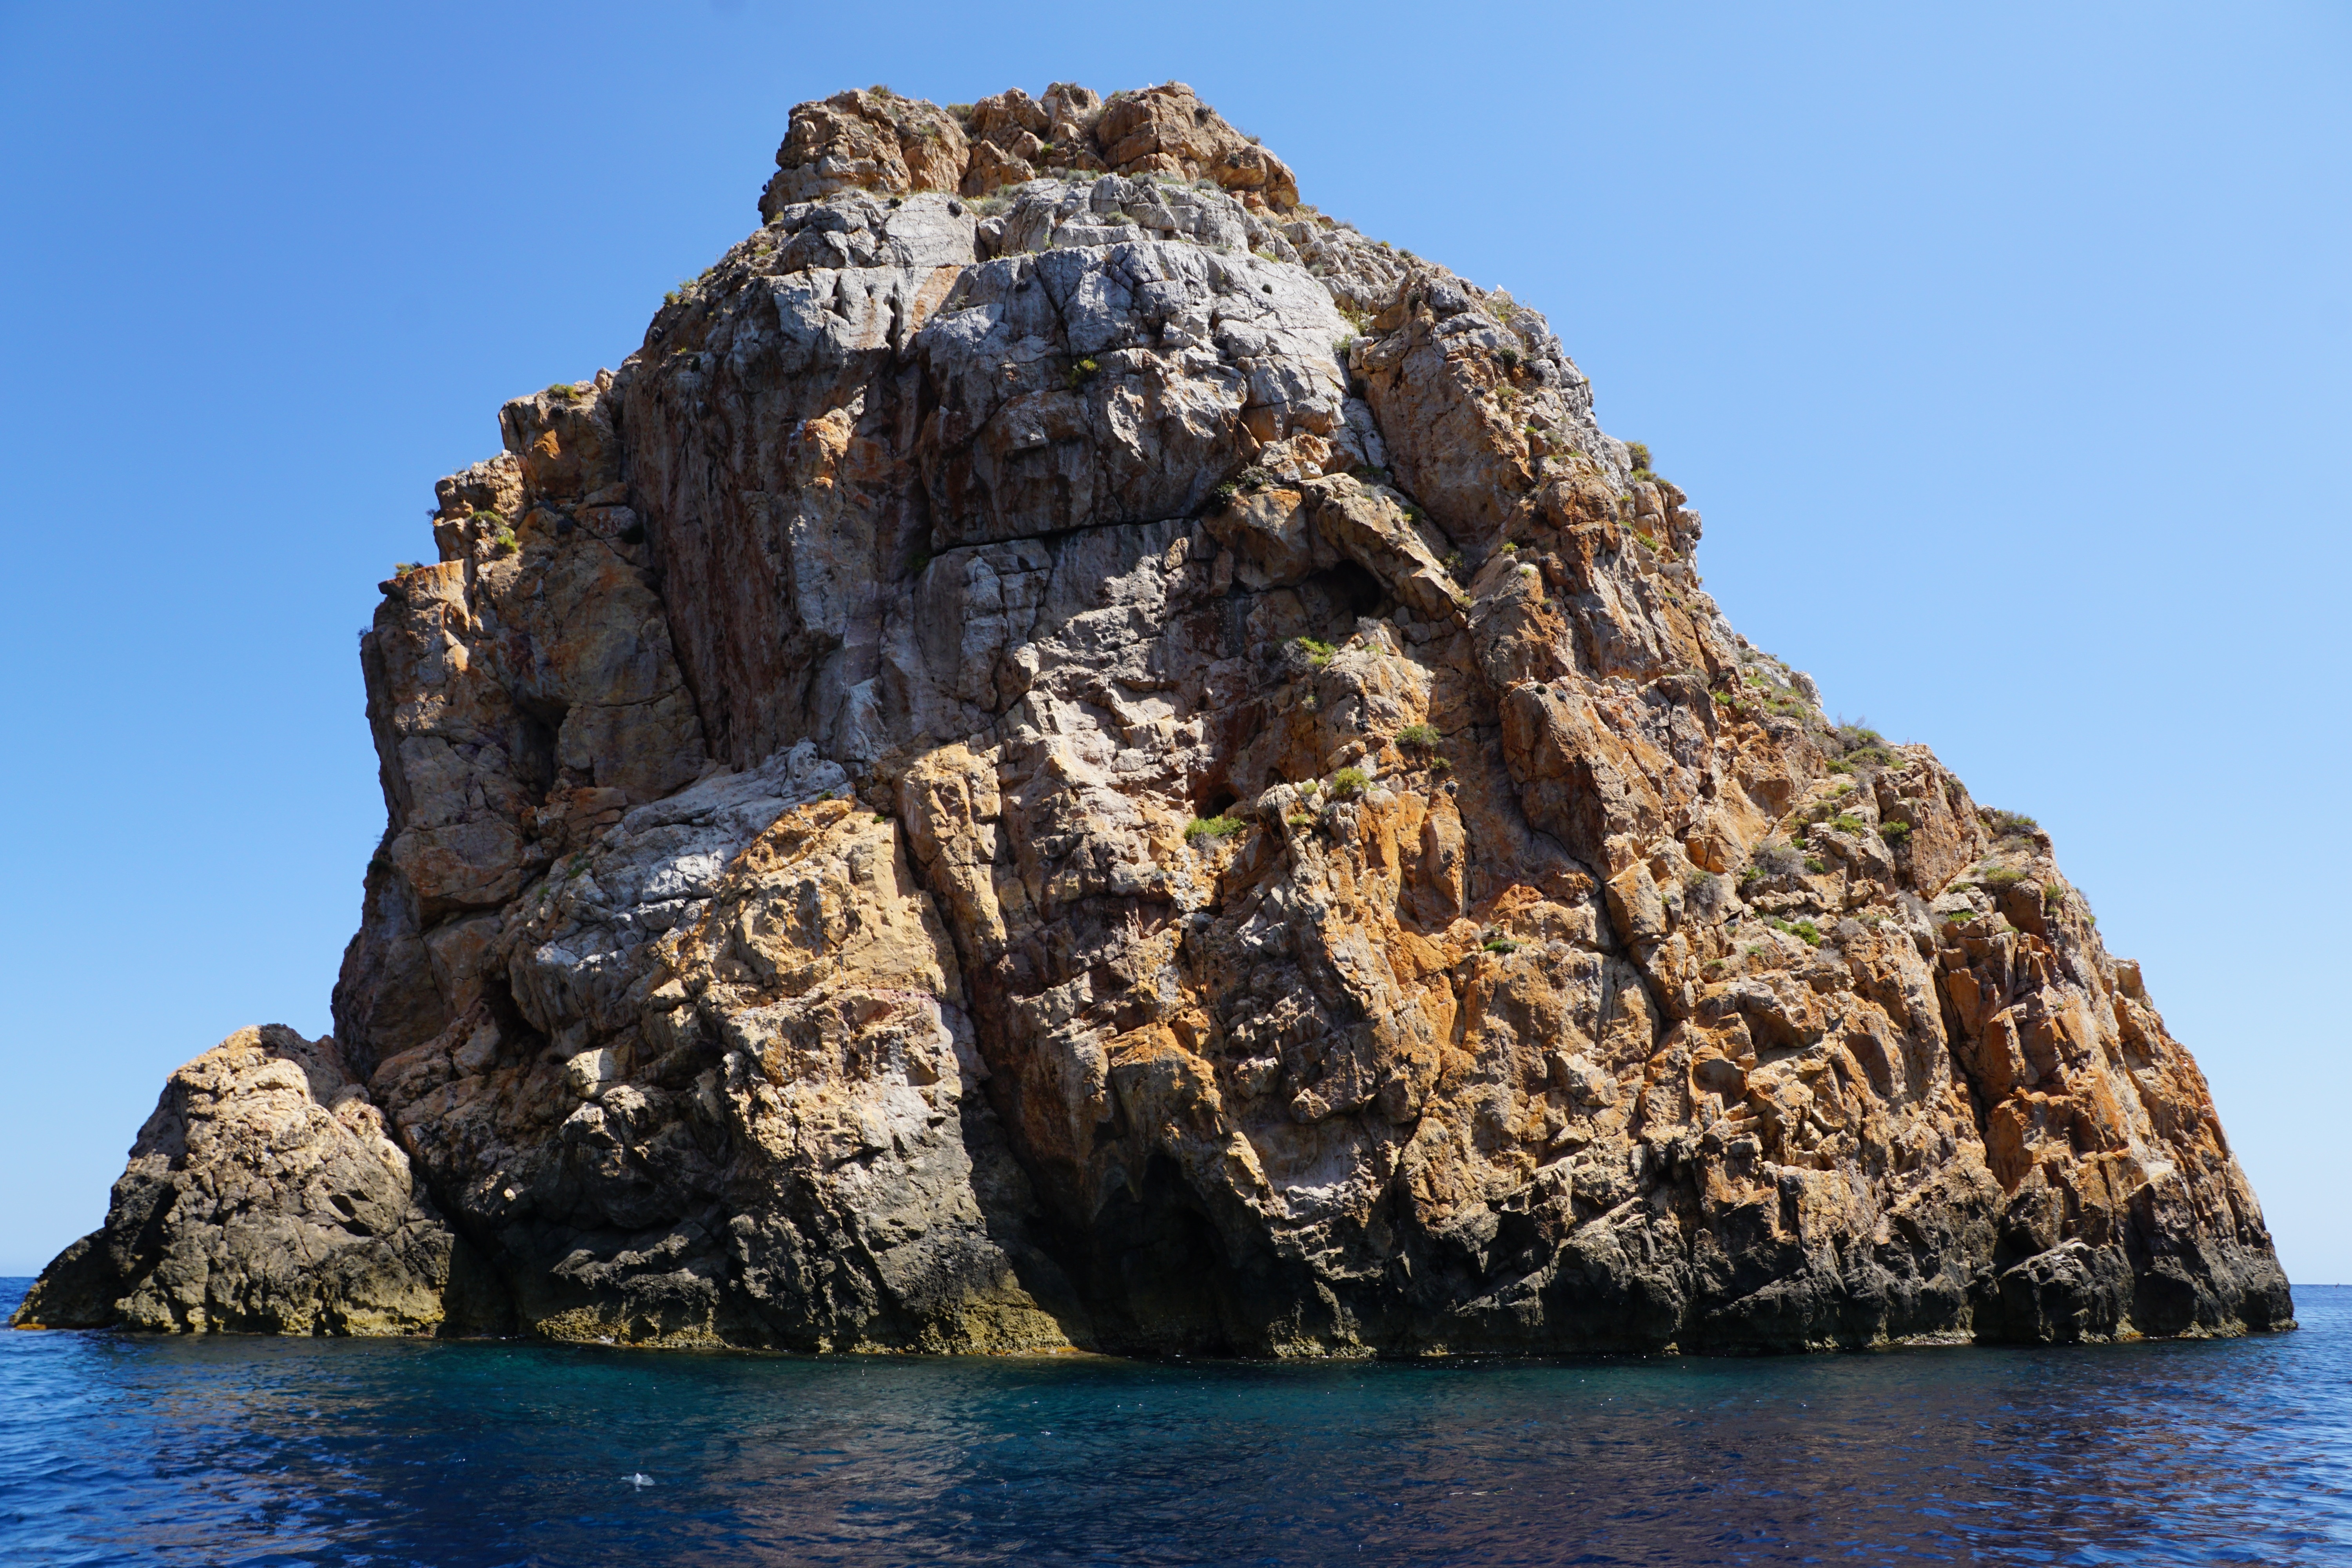 brown boulder on ocean under blue sky during daytime